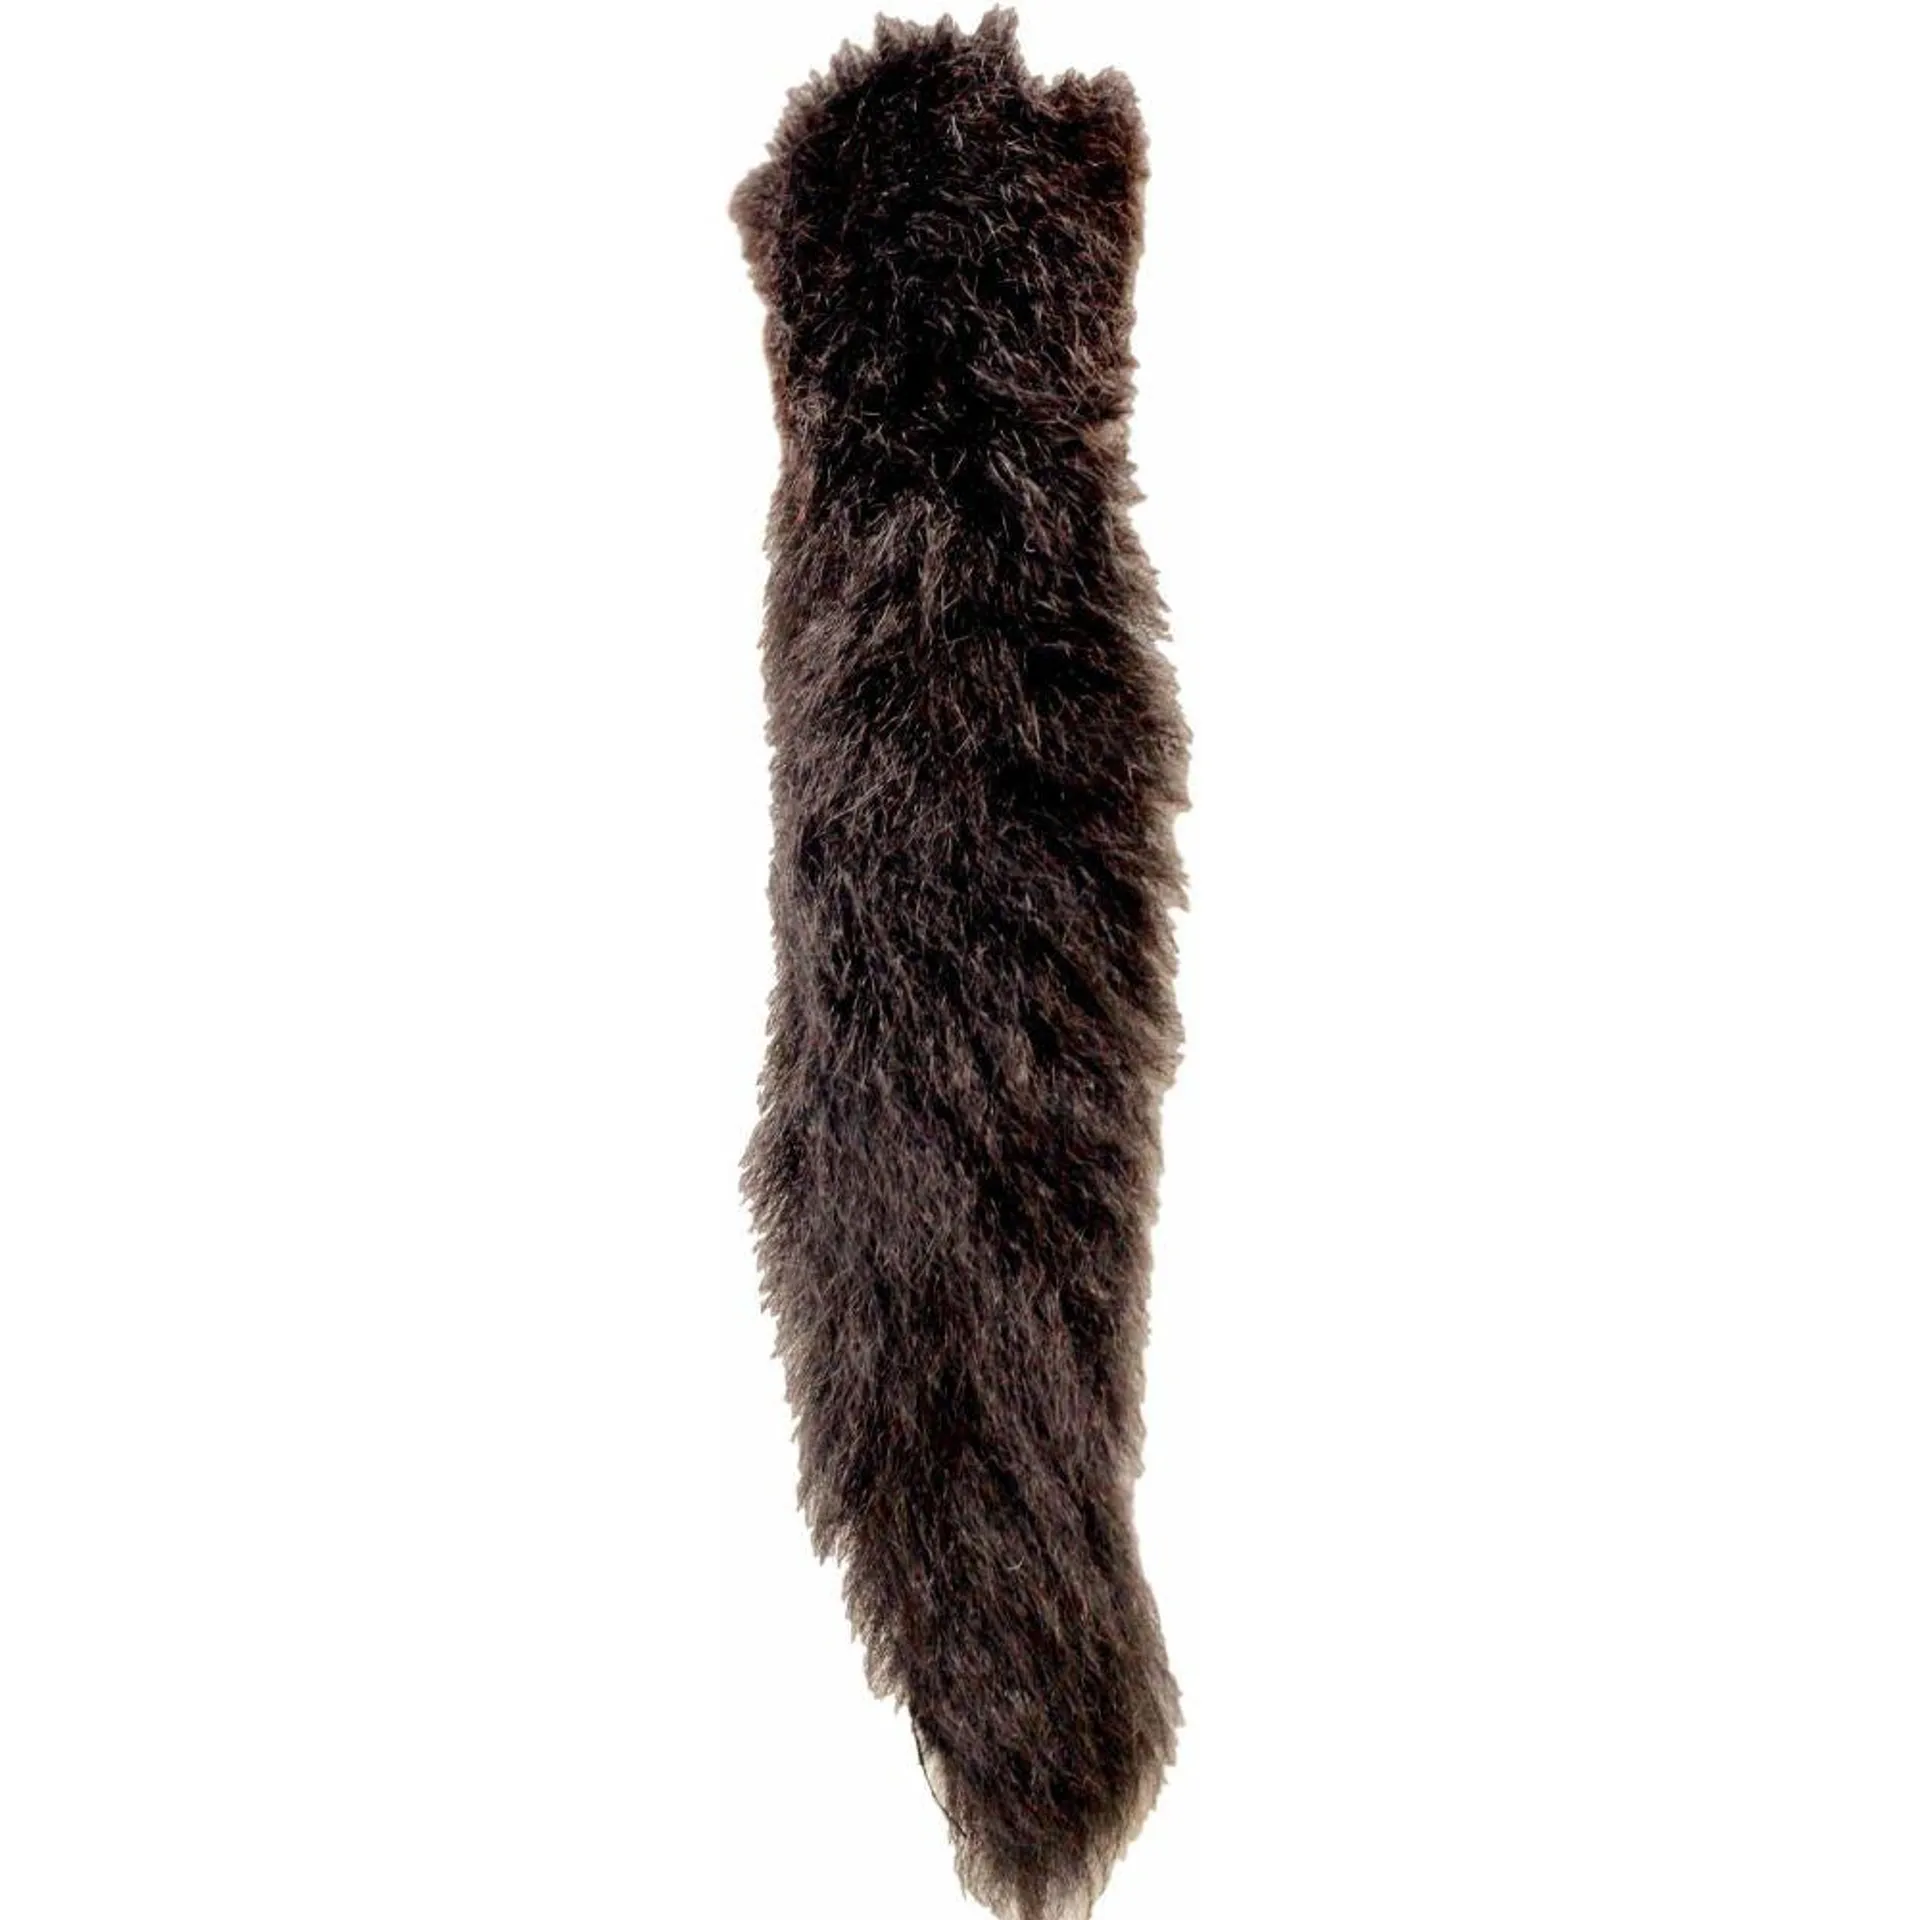 Possum Tail